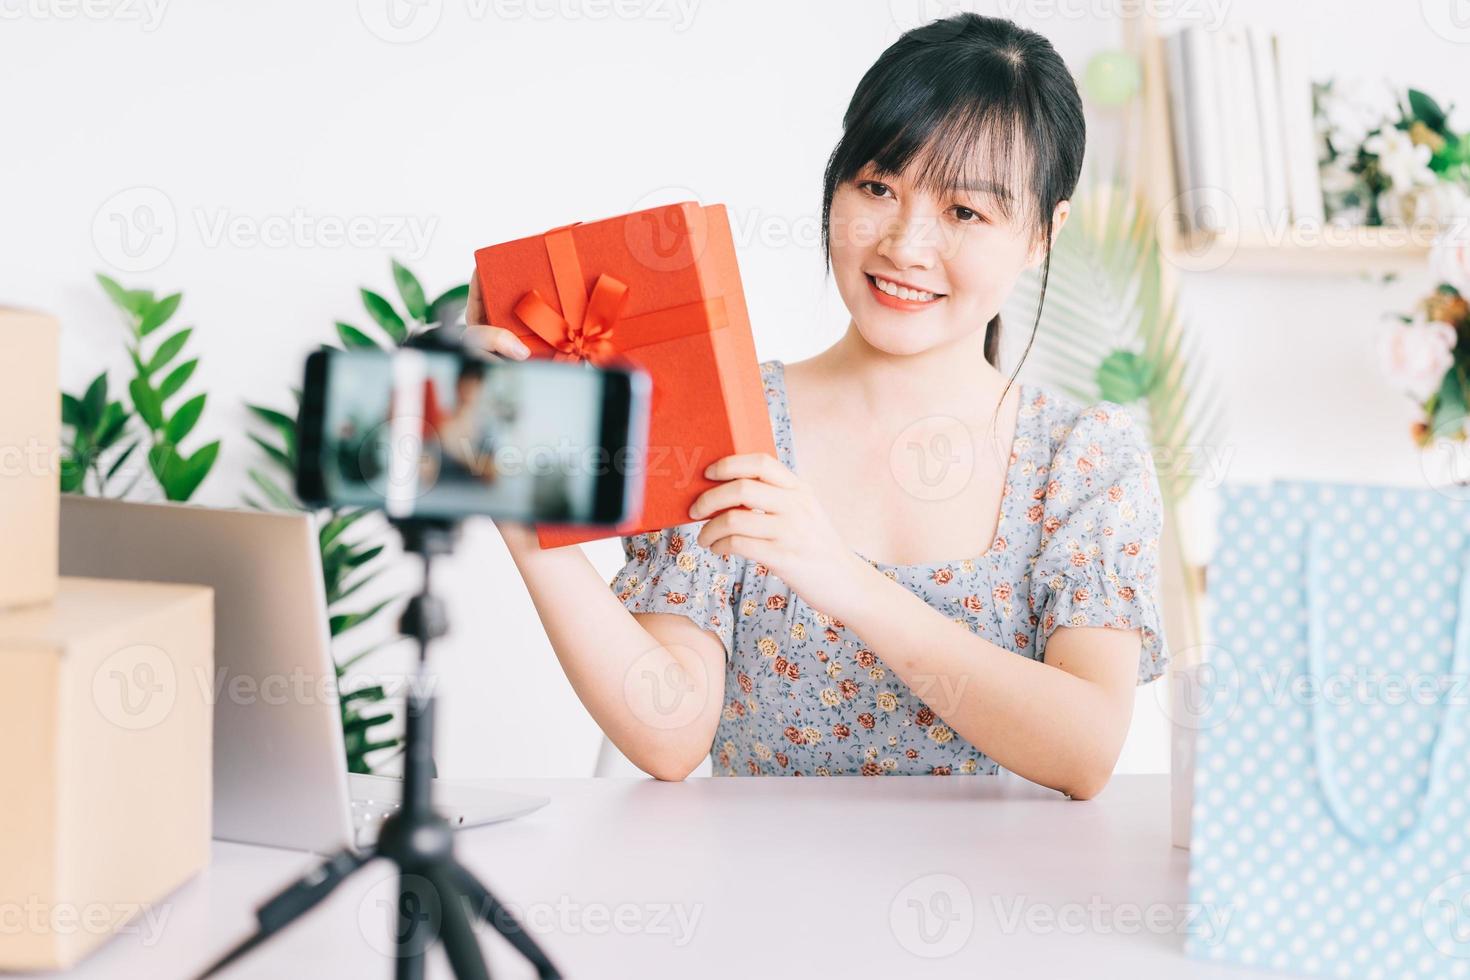 jonge Aziatische vrouw livestream om cadeaus te geven aan het publiek dat haar stream op sociale netwerkplatforms bekijkt foto